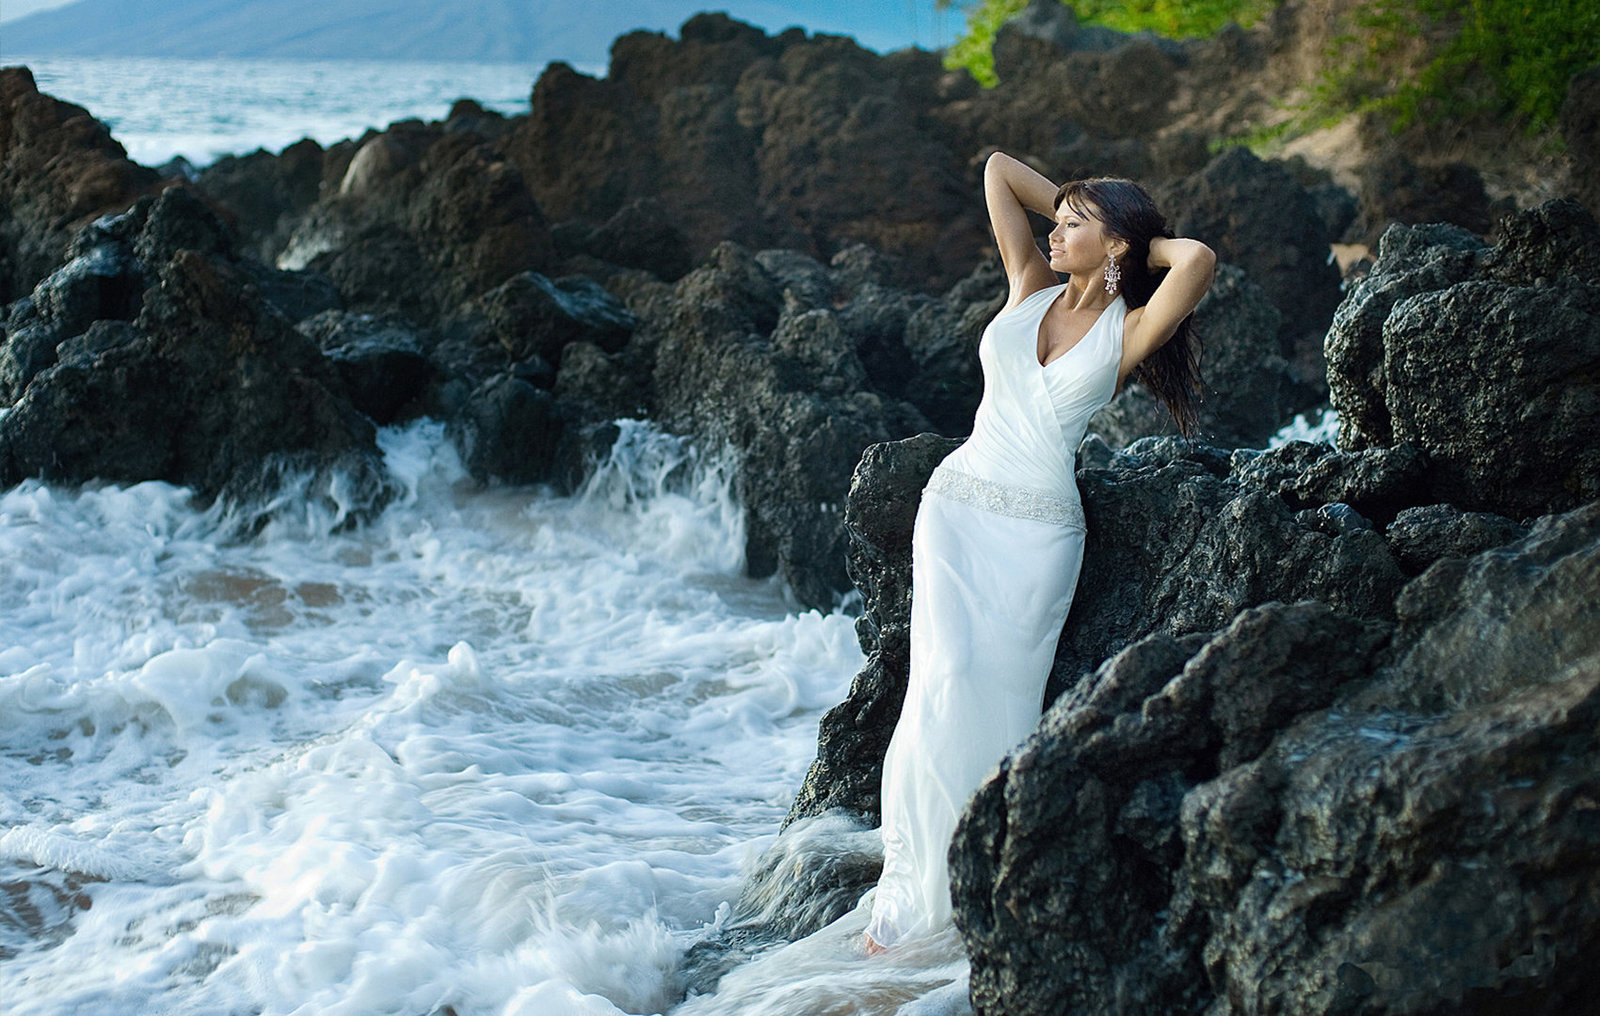 Maui photographers | Photographers On Maui